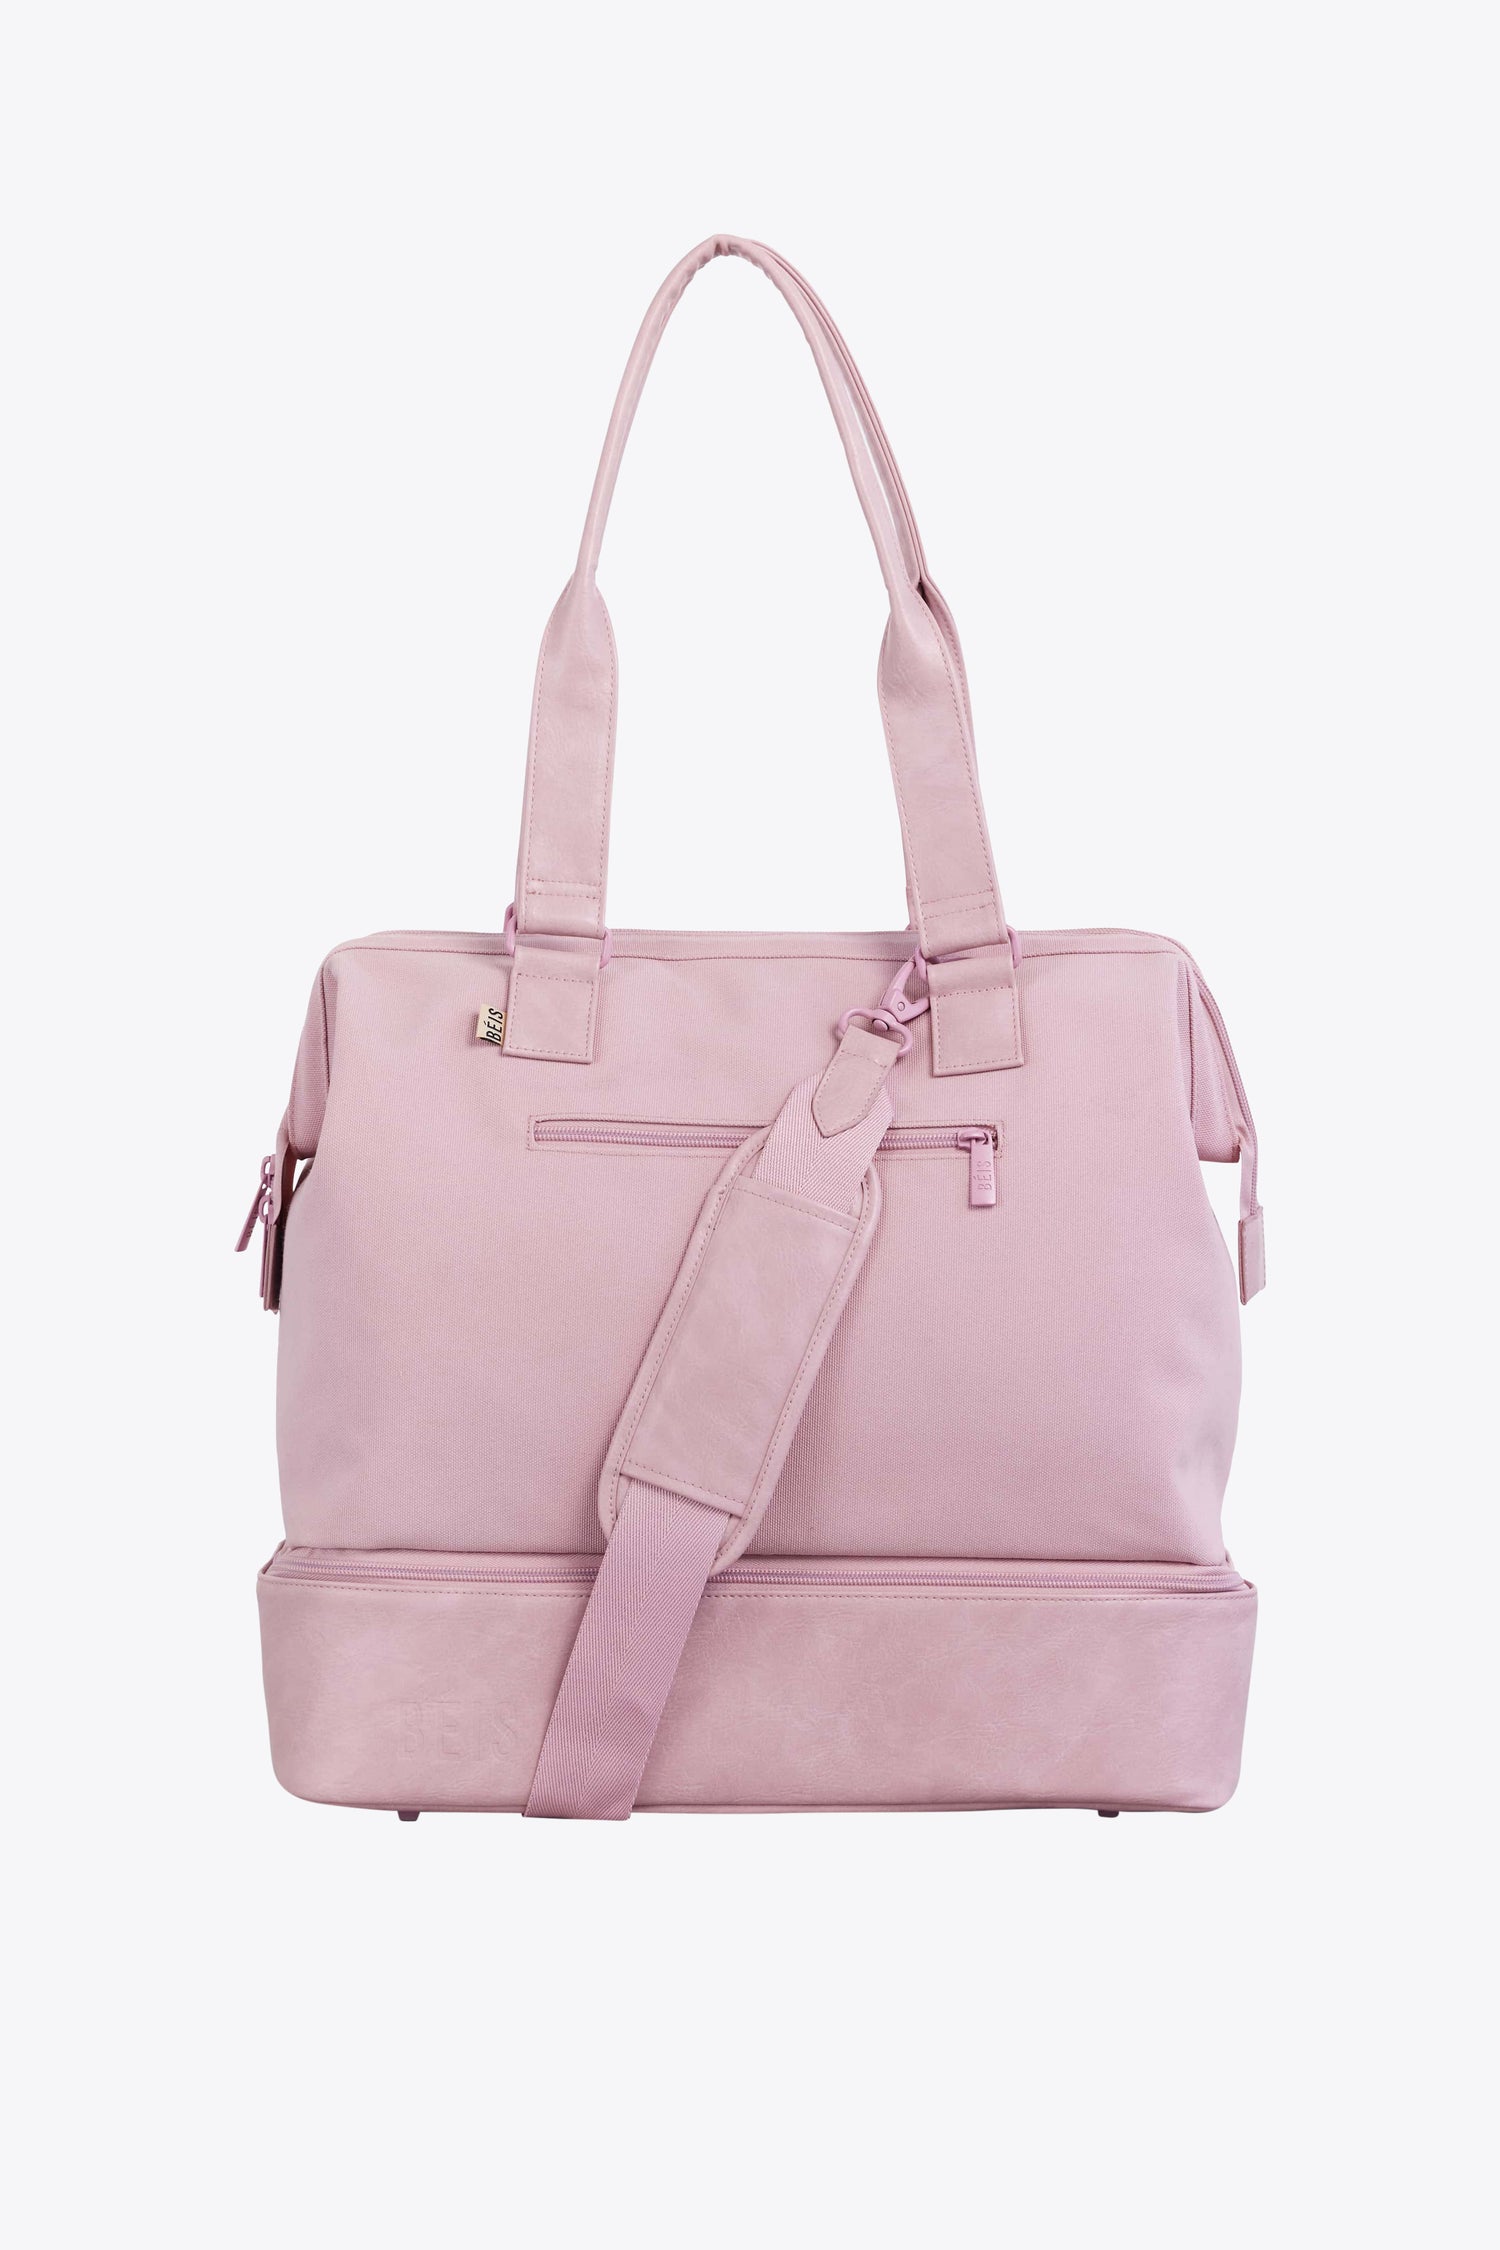 Pink Travel Bags, Work Totes & Weekenders